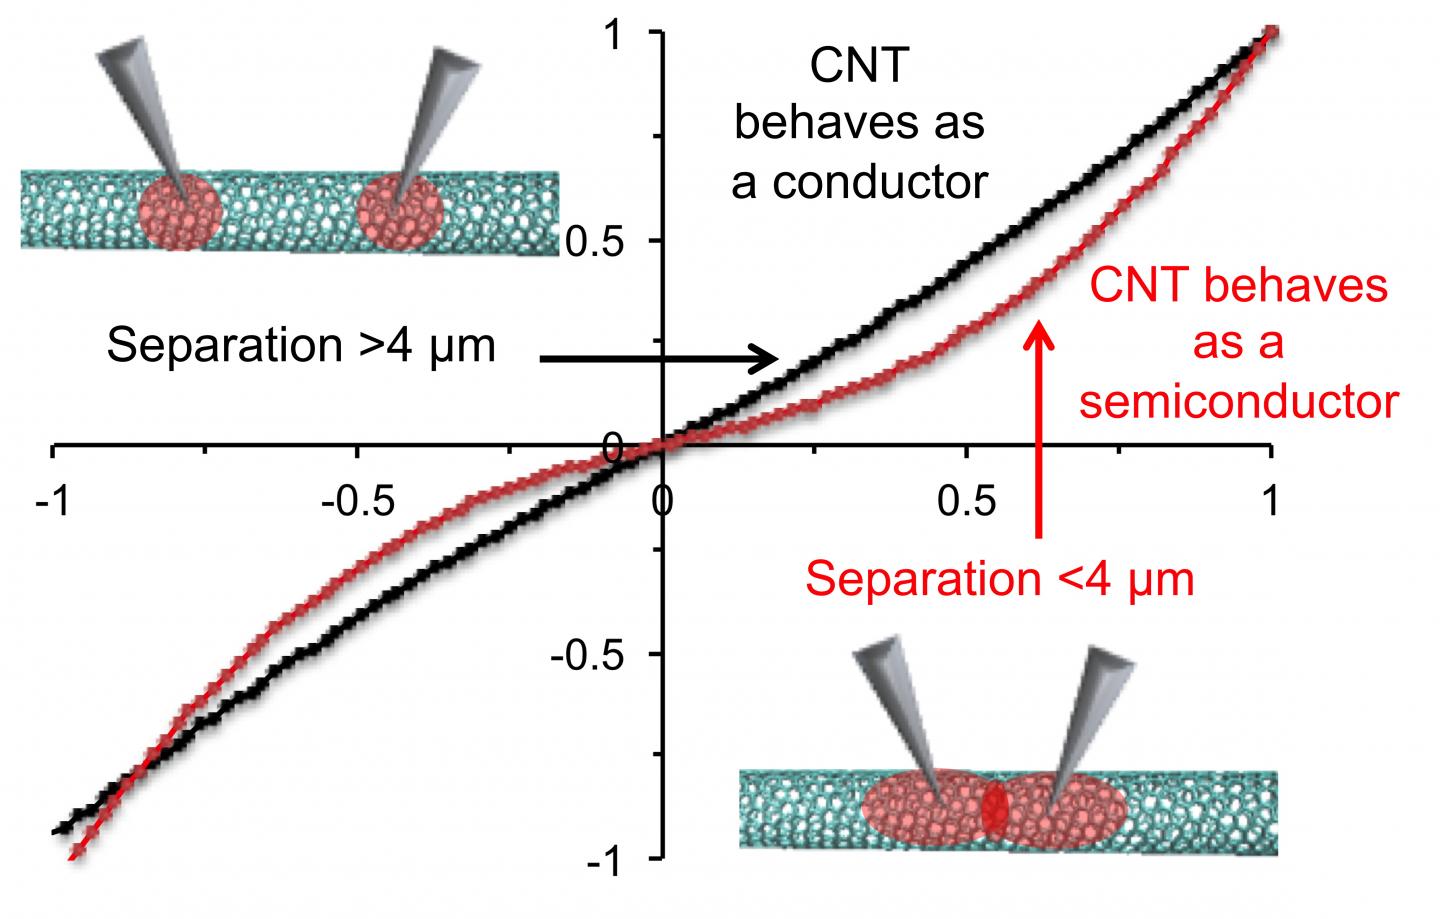 Heating Carbon Nanotubes at High Temperatures